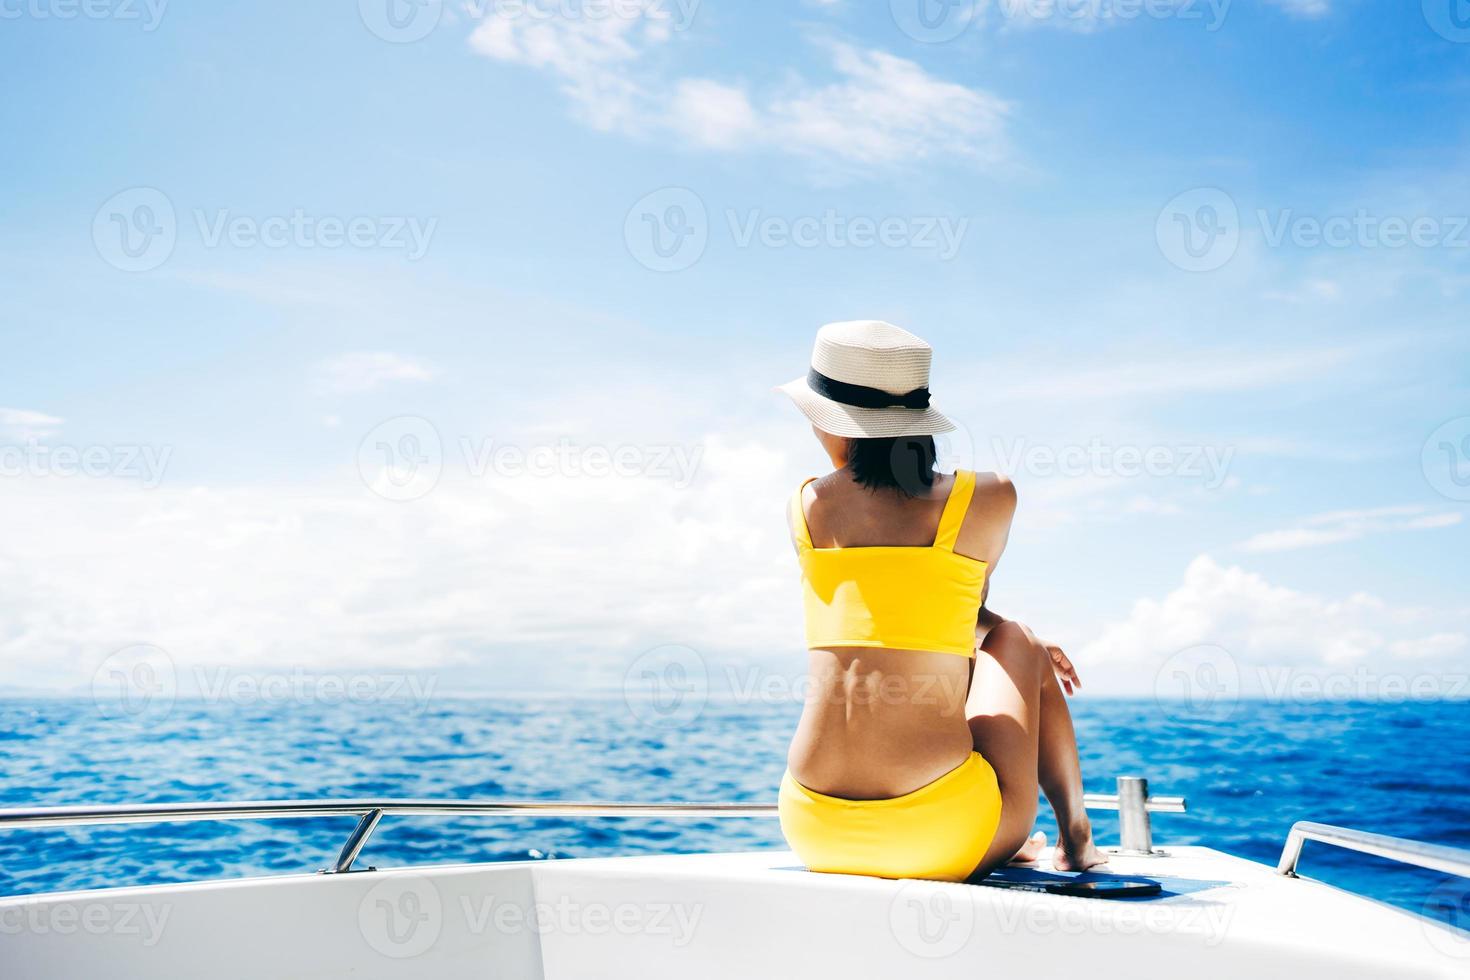 jovem adulta viajando sente-se no barco à vela com céu azul e mar foto